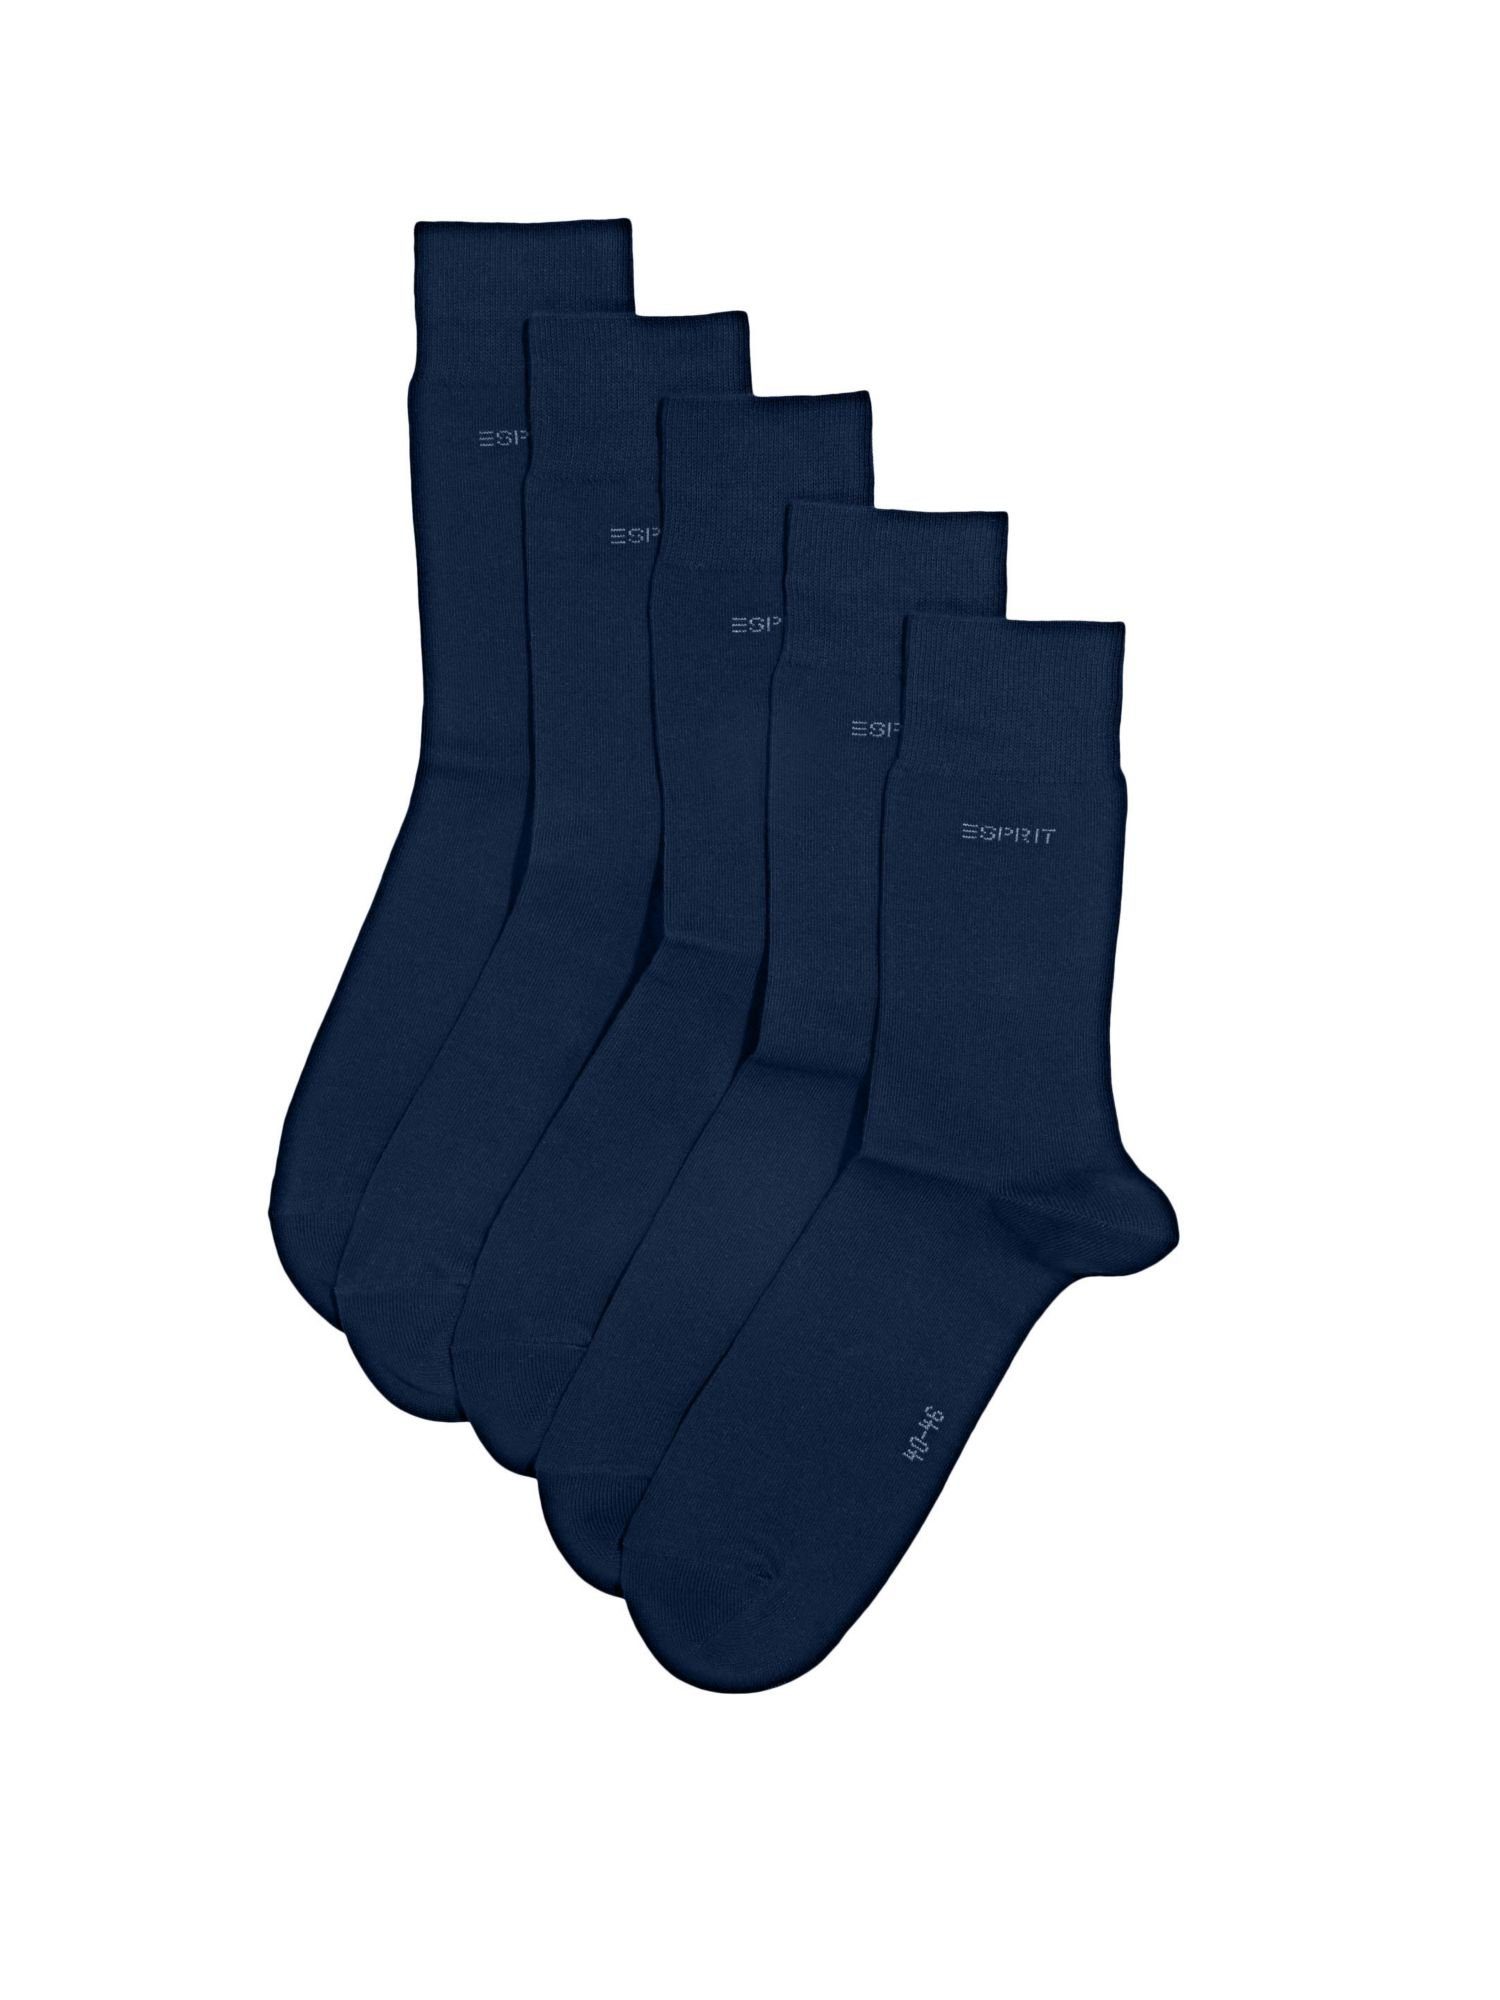 MARINE Socken 5er-Pack Socken, Esprit Bio-Baumwollmix